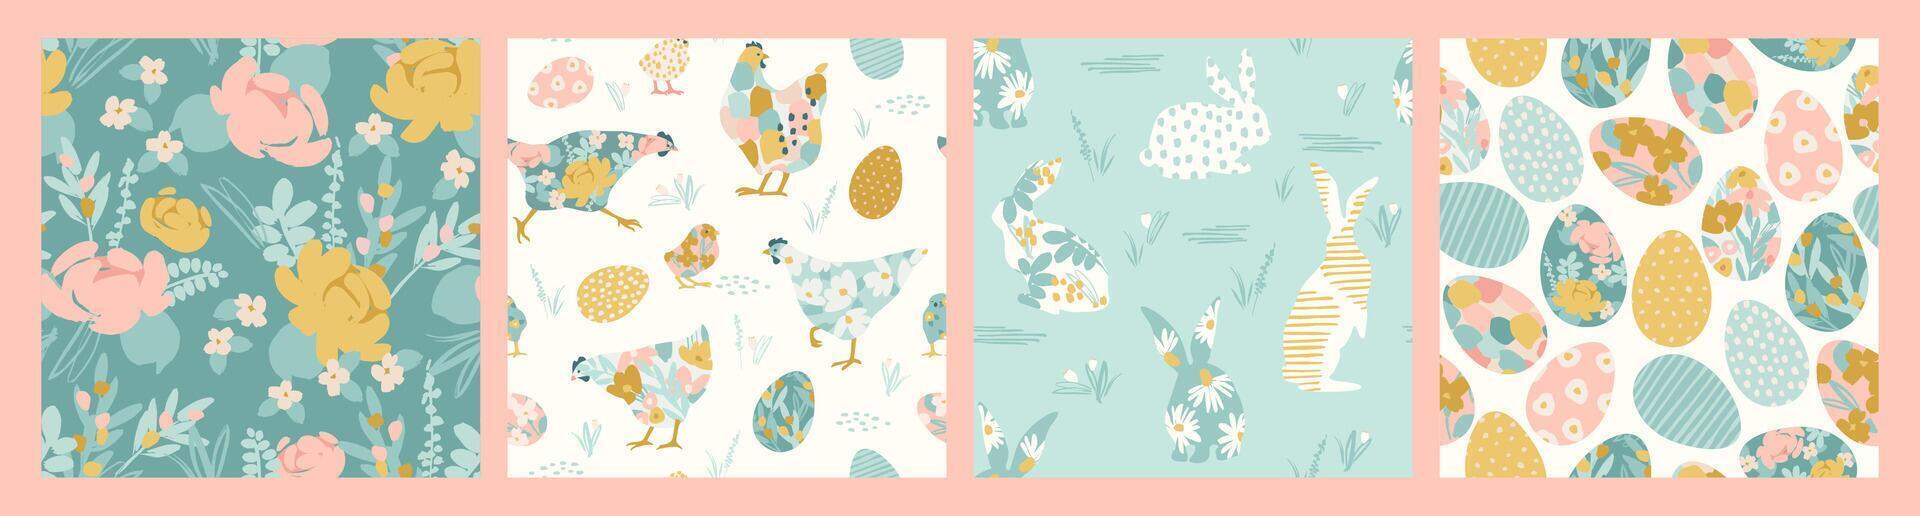 Lycklig påsk. vektor sömlös mönster med abstrakt kycklingar, kaniner, ägg och blommor. vektor design mallar